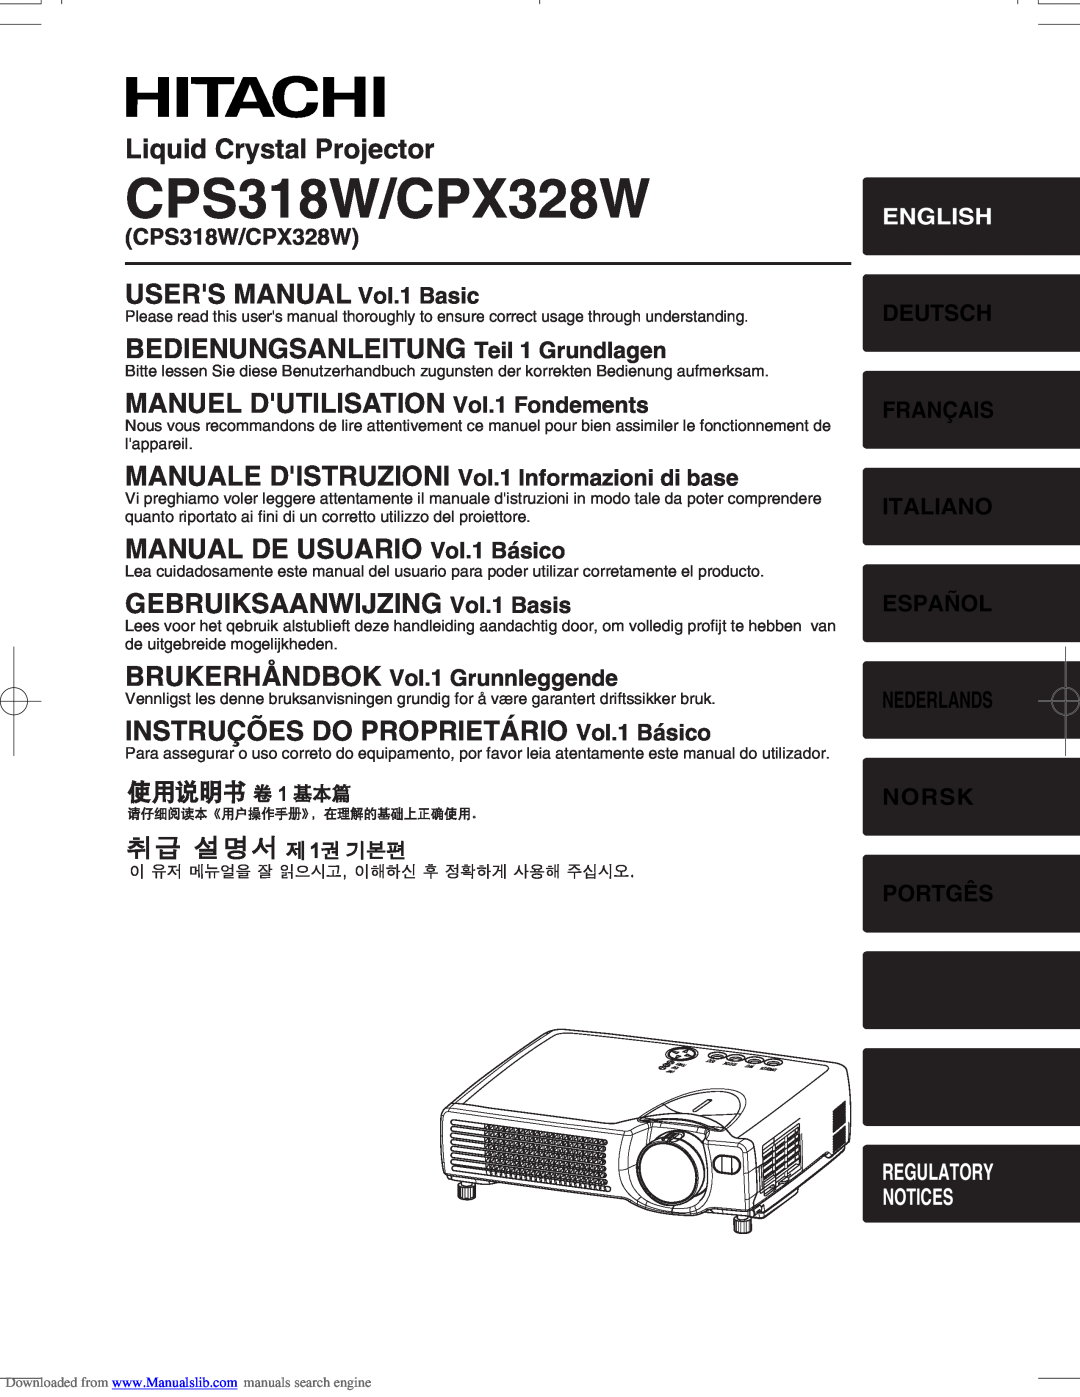 Hitachi user manual CPS318W/CPX328W, MANUALE DISTRUZIONI Vol.1 Informazioni di base, BRUKERHÅNDBOK Vol.1 Grunnleggende 